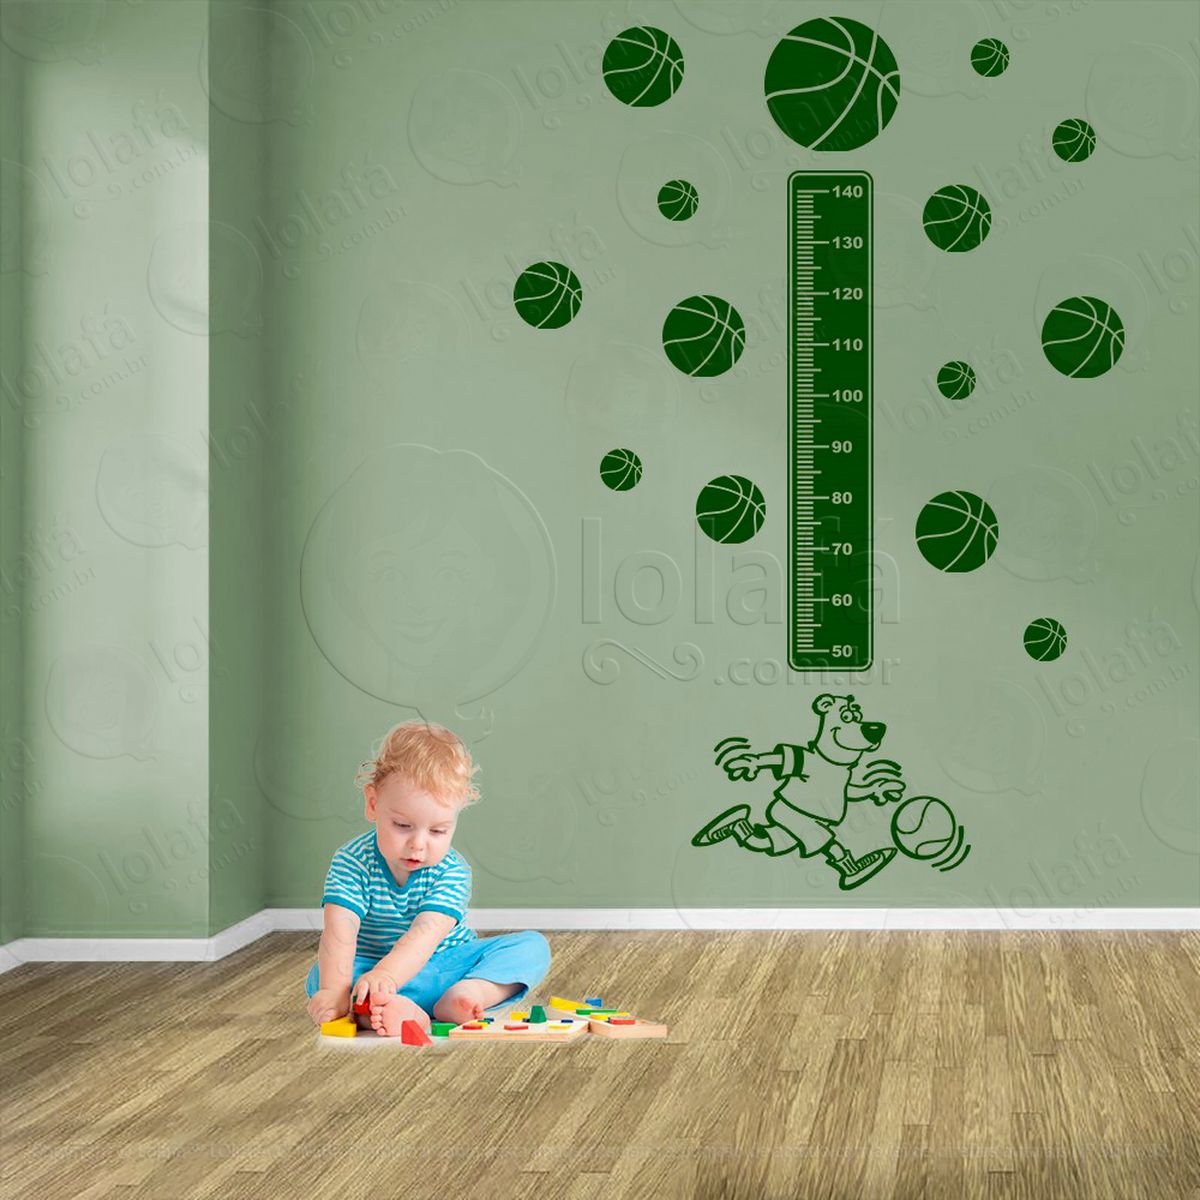 basquetebol e bolas de basquete adesivo régua de crescimento infantil, medidor de altura para quarto, porta e parede - mod:269